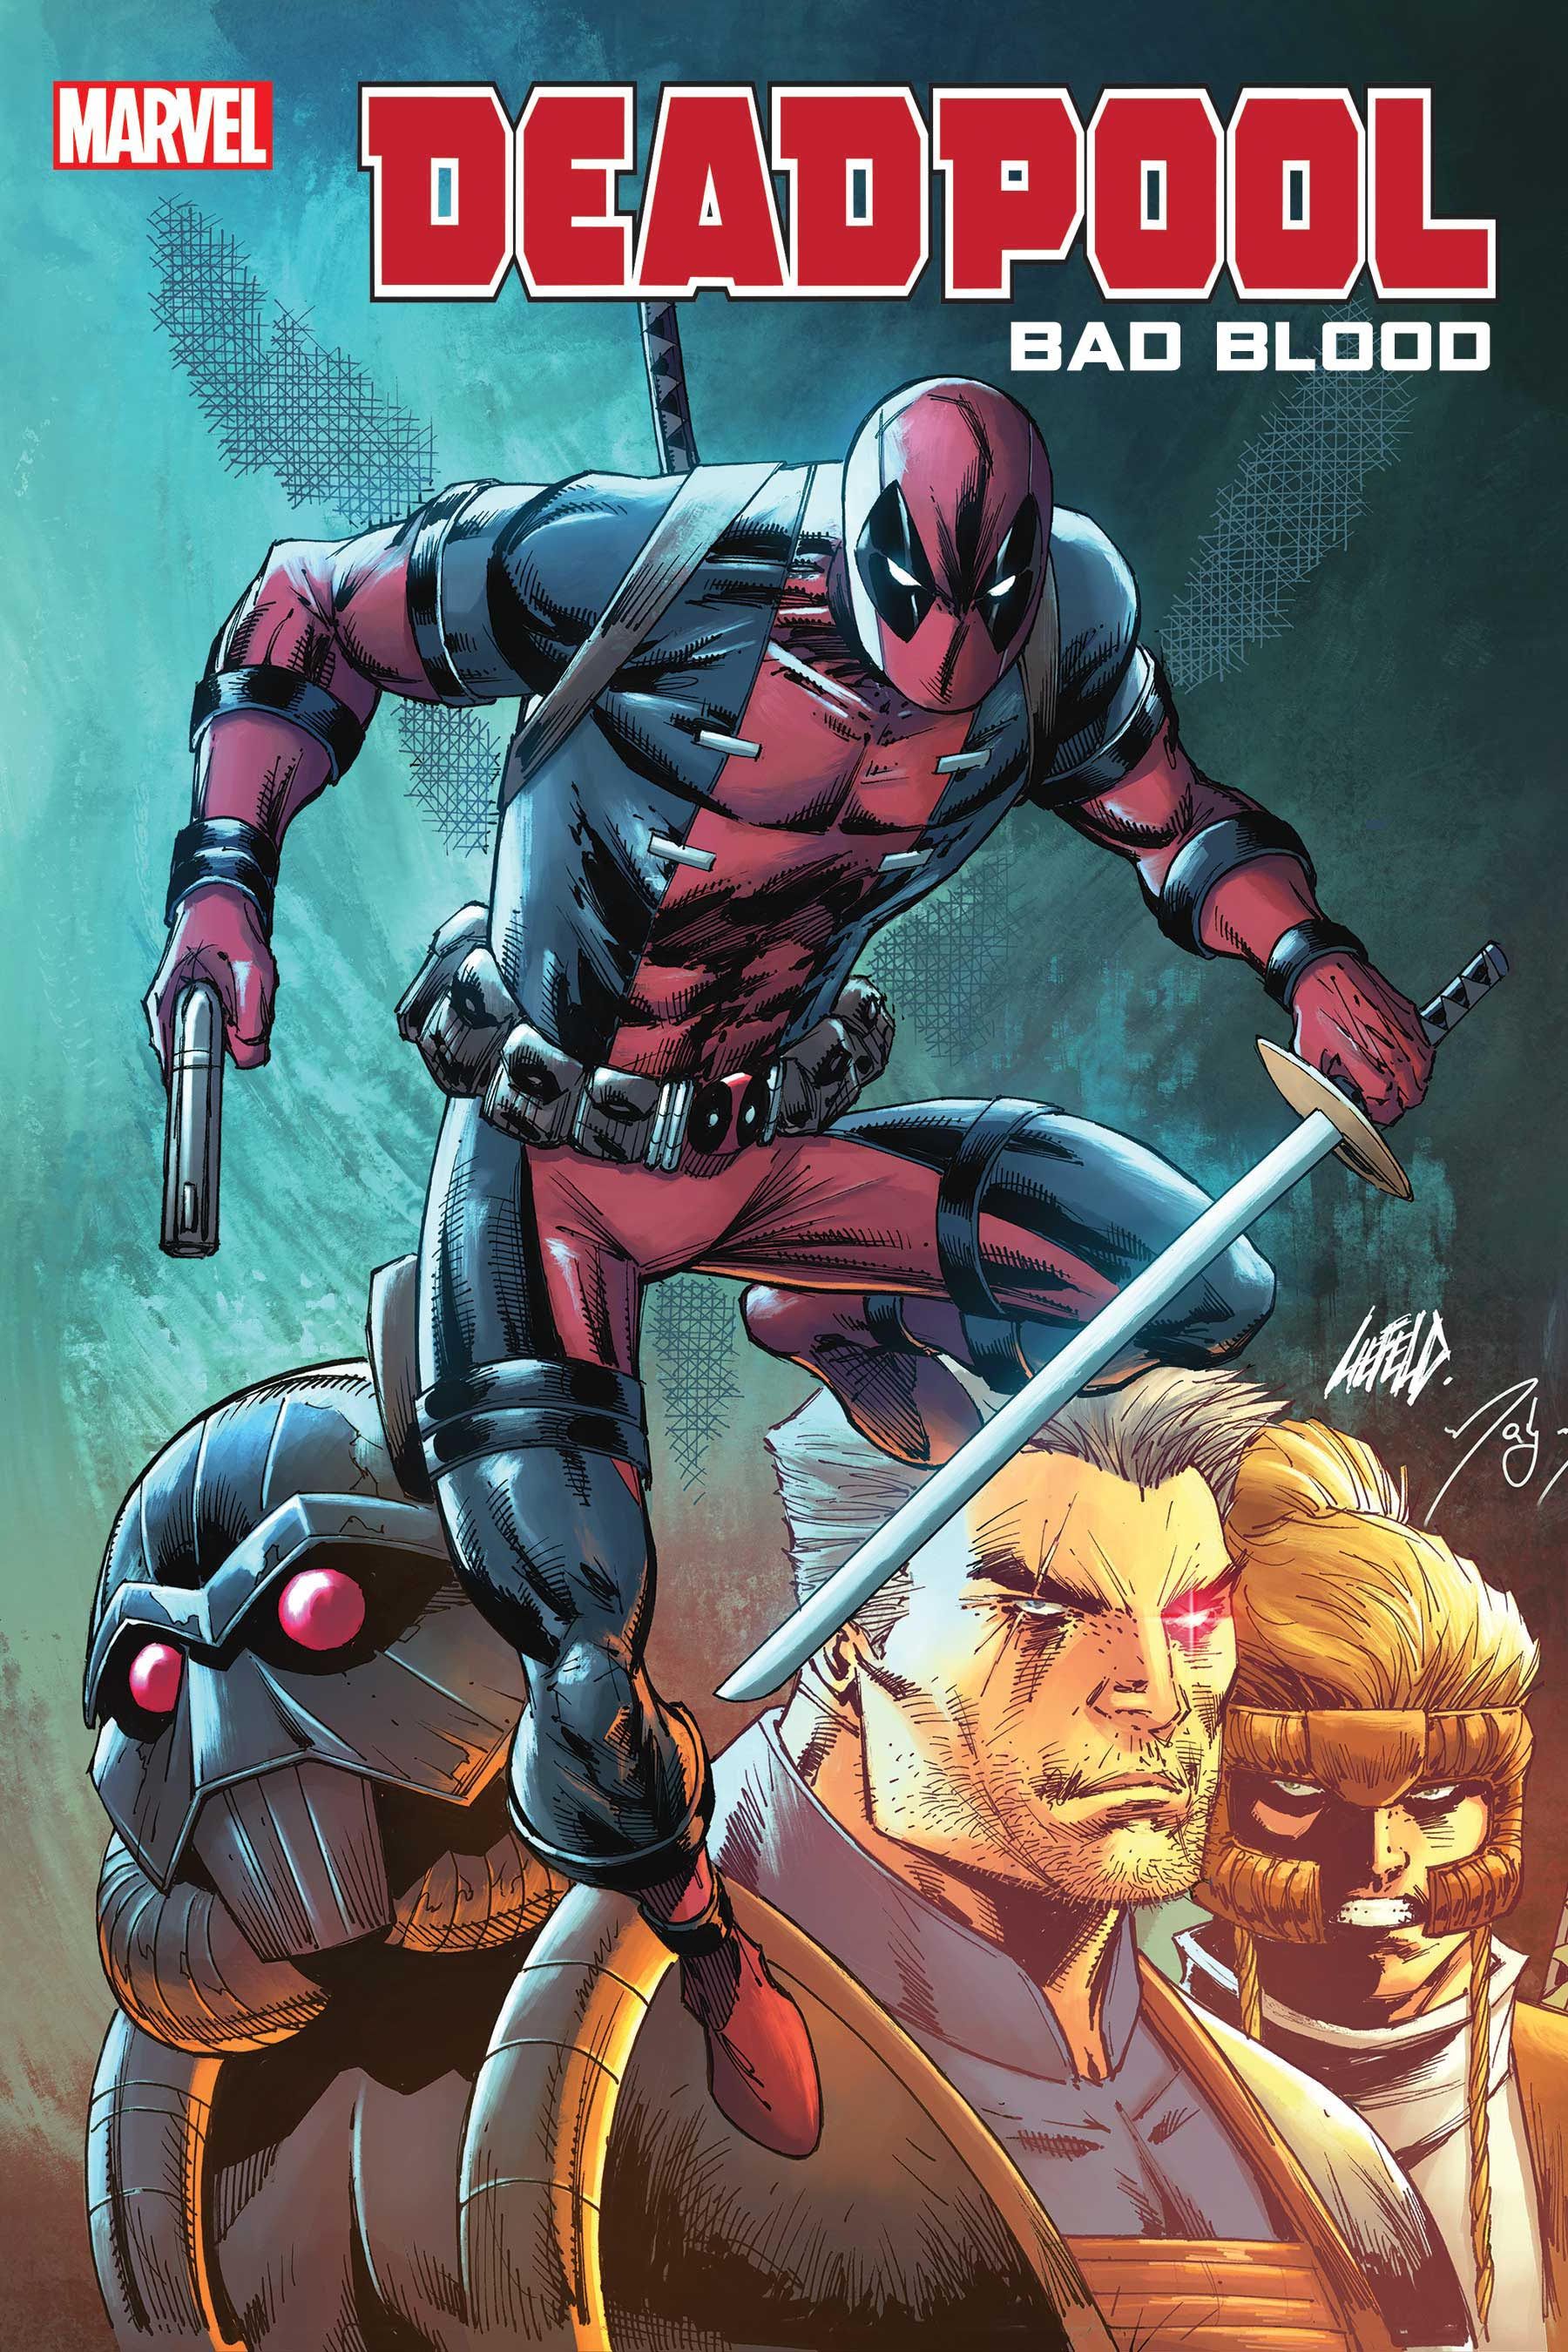 Marvel relança romance gráfico de Rob Liefeld Deadpool como série limitada 2